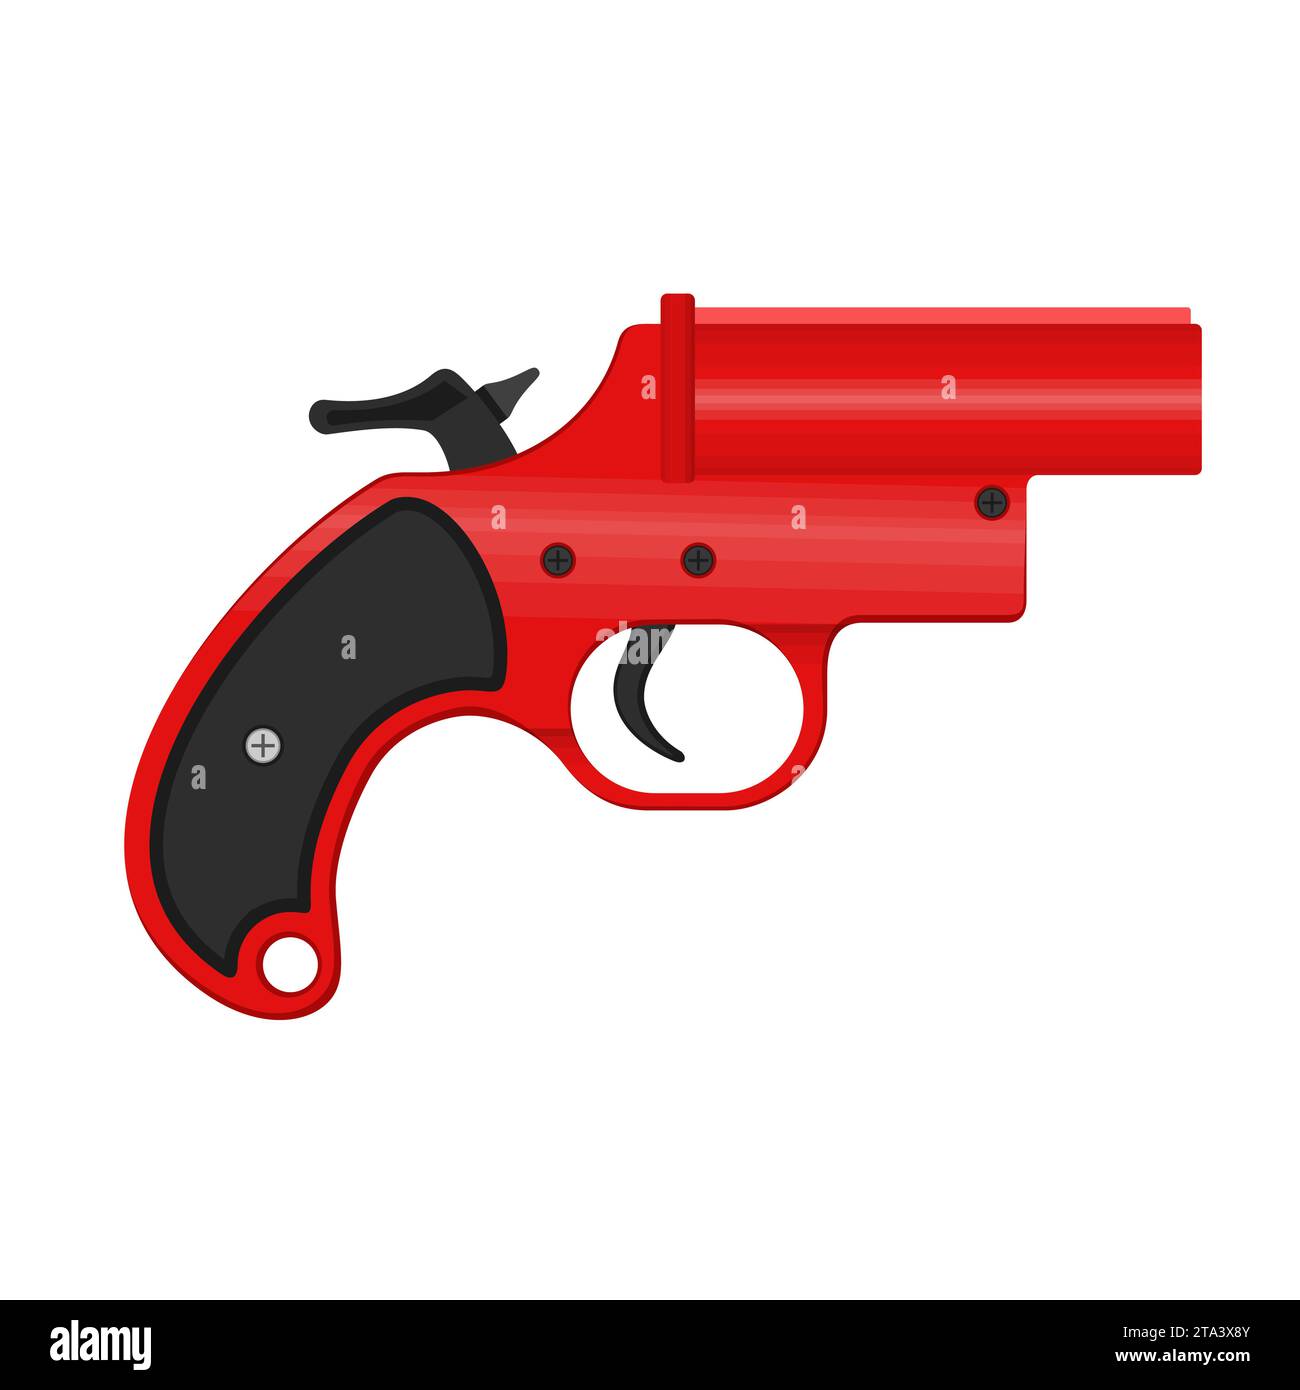 Una pistola a fuoco, nota anche come pistola molto pistola o pistola di segnale, è una pistola a foro grande che scarica i razzi. La pistola bagliore viene usata per un segnale di soccorso Illustrazione Vettoriale